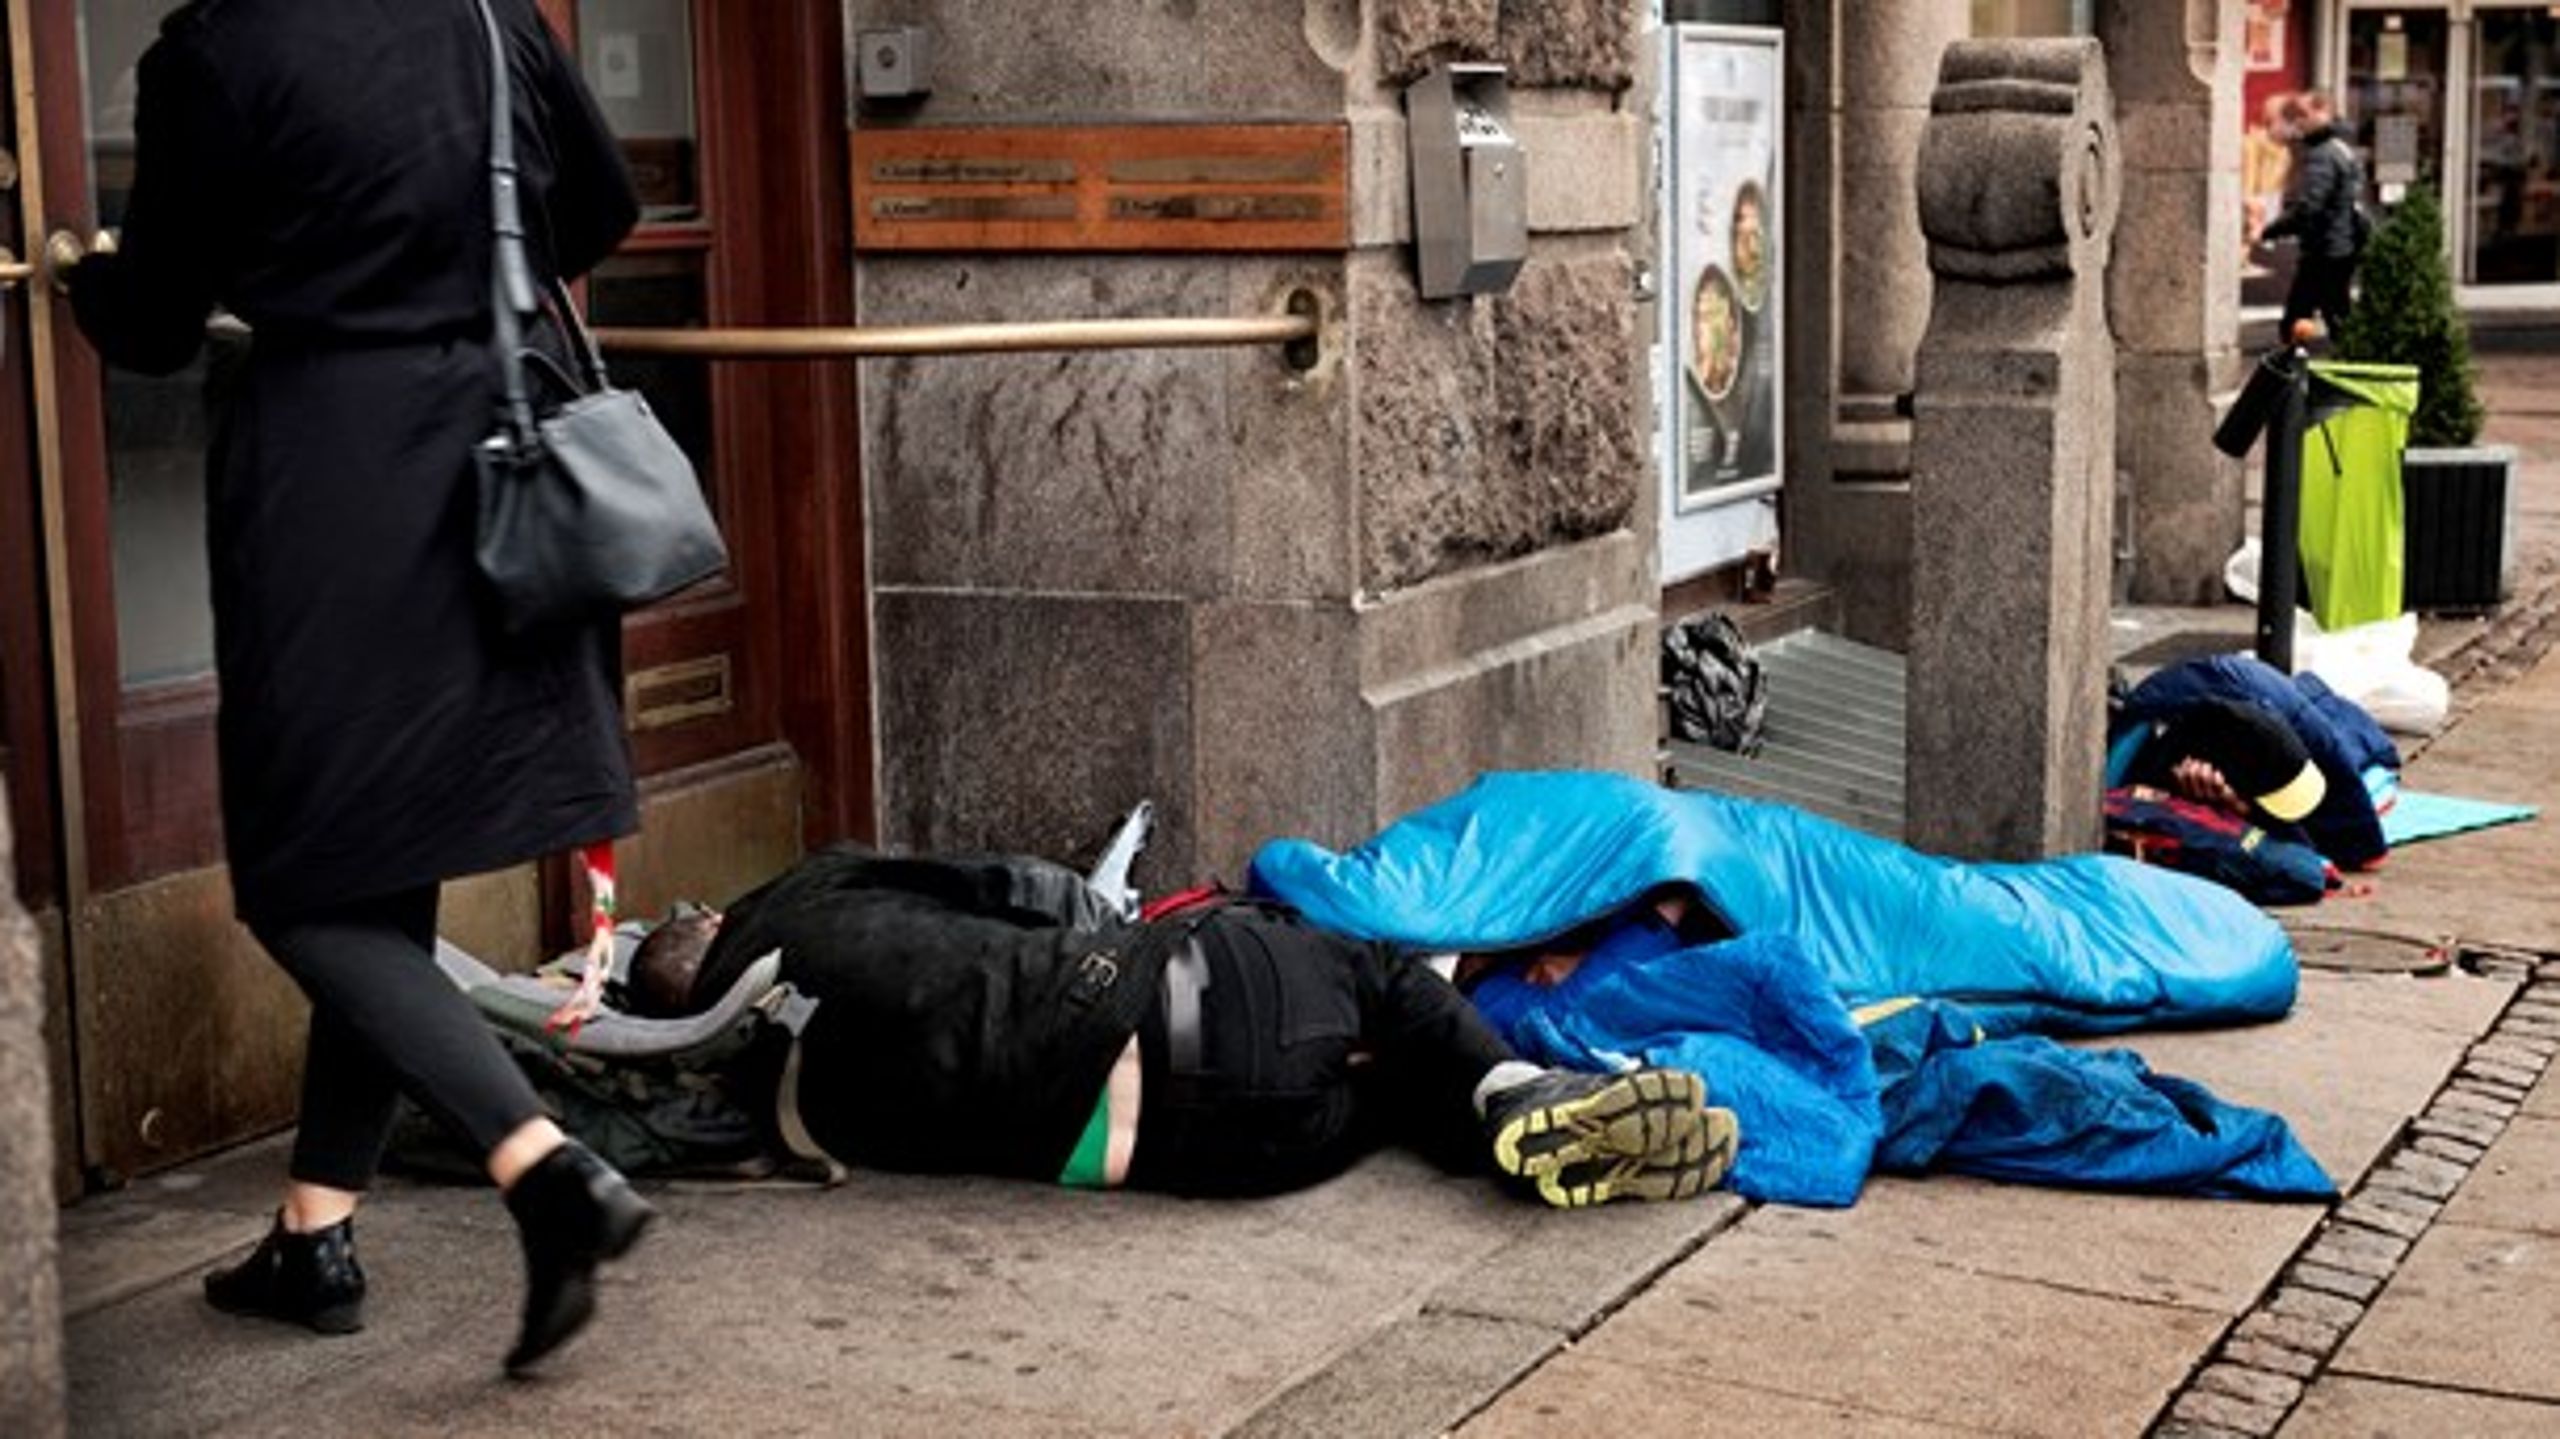 Ældre hjemløse har ikke tillid til "systemet", og derfor trækker sundheds- og socialtilbud ikke. I stedet opholder de sig omkring genbrugsbutikker, væresteder og gadehjørner, skriver antropolog.